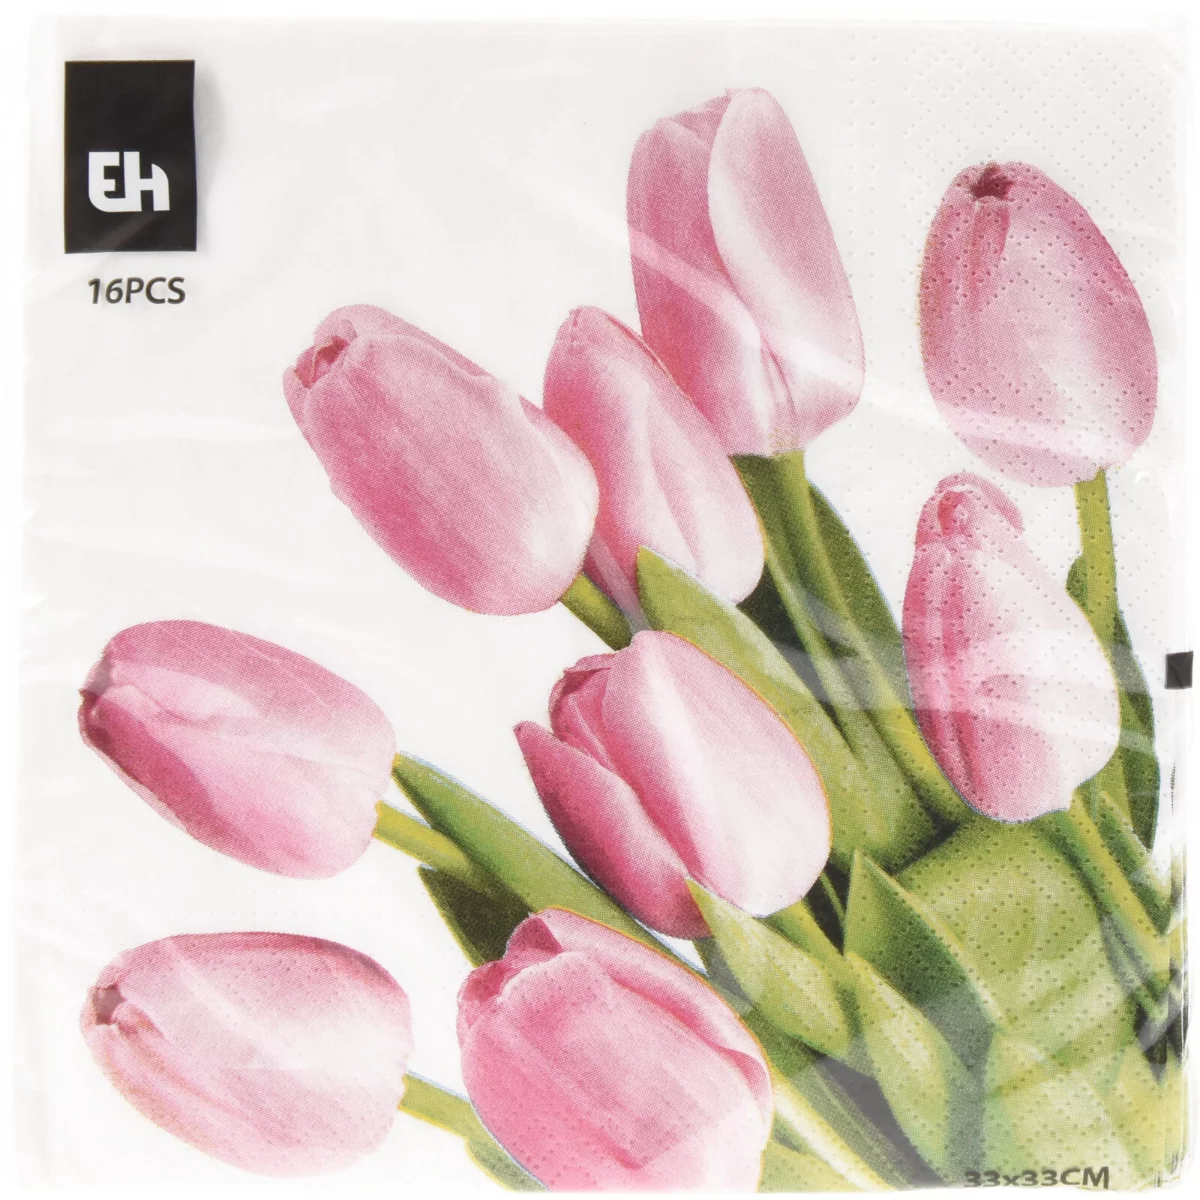 Tavaszi szalvéta 3 rétegű 16 db 33x33cm - Rózsaszín tulipánok